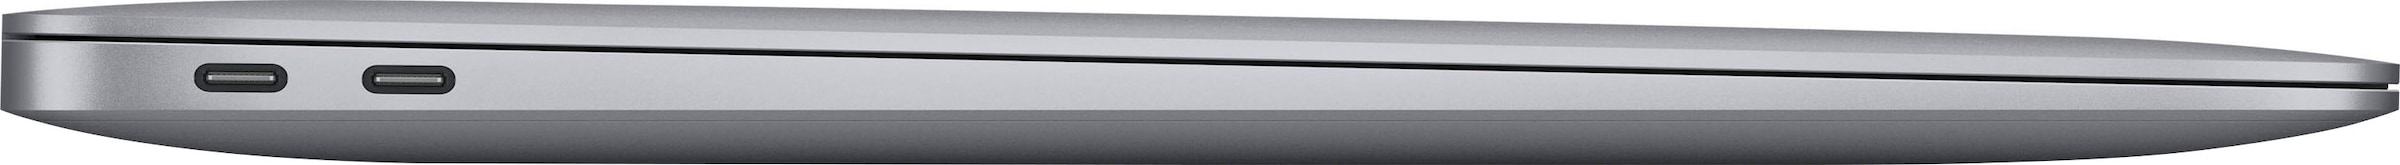 Apple Notebook »MacBook Air«, 33,78 cm, / 13,3 Zoll, Apple, M1, M1, 256 GB  SSD, 8-core CPU auf Rechnung kaufen